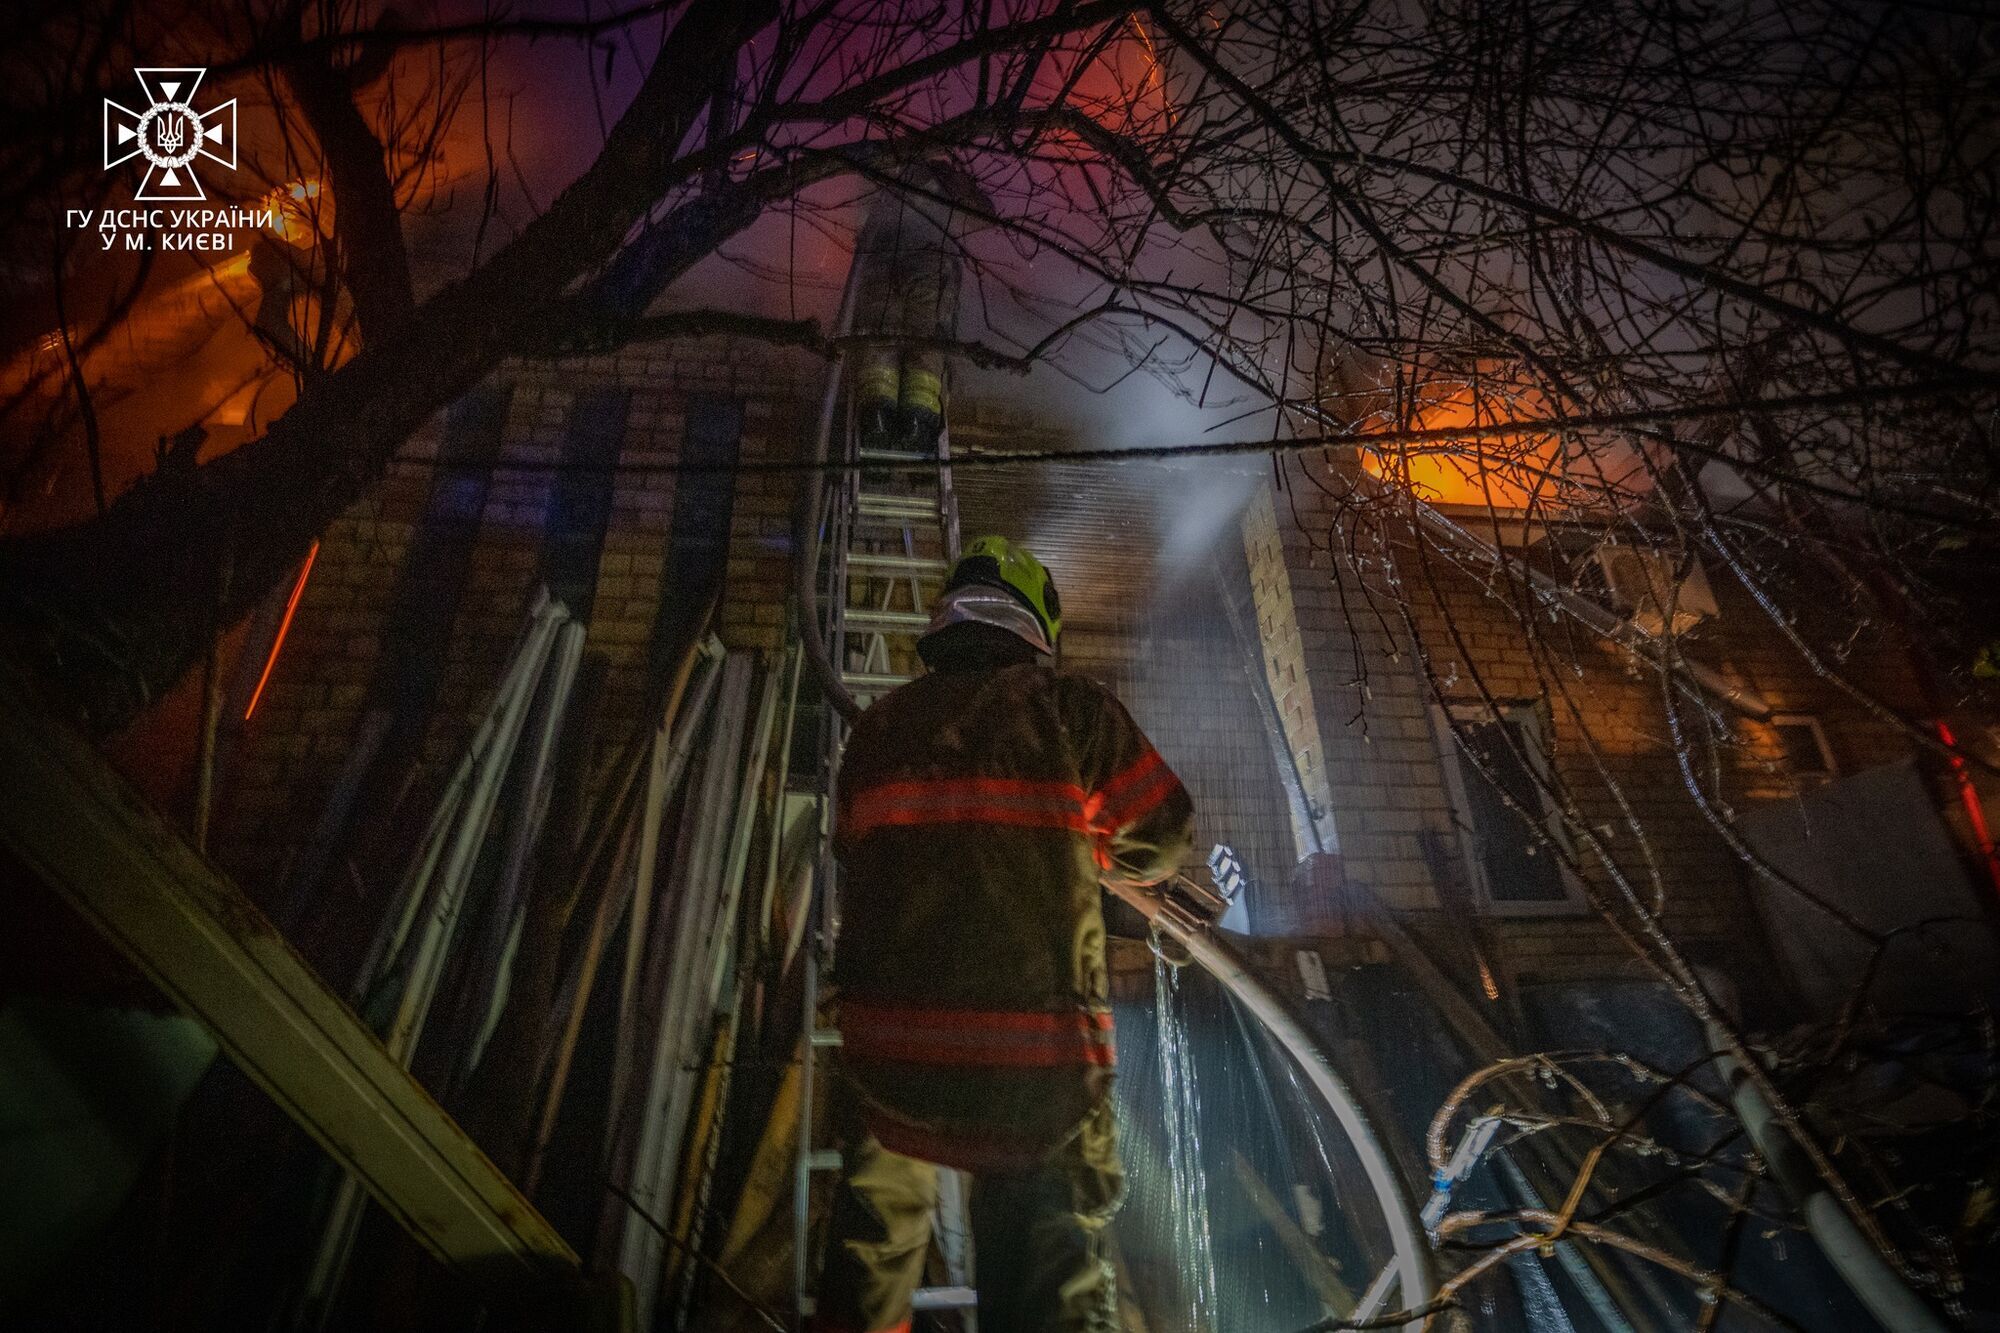 В Киеве на Нивках спасатели несколько часов тушили пожар в доме: эвакуированы 5 человек. Фото и видео